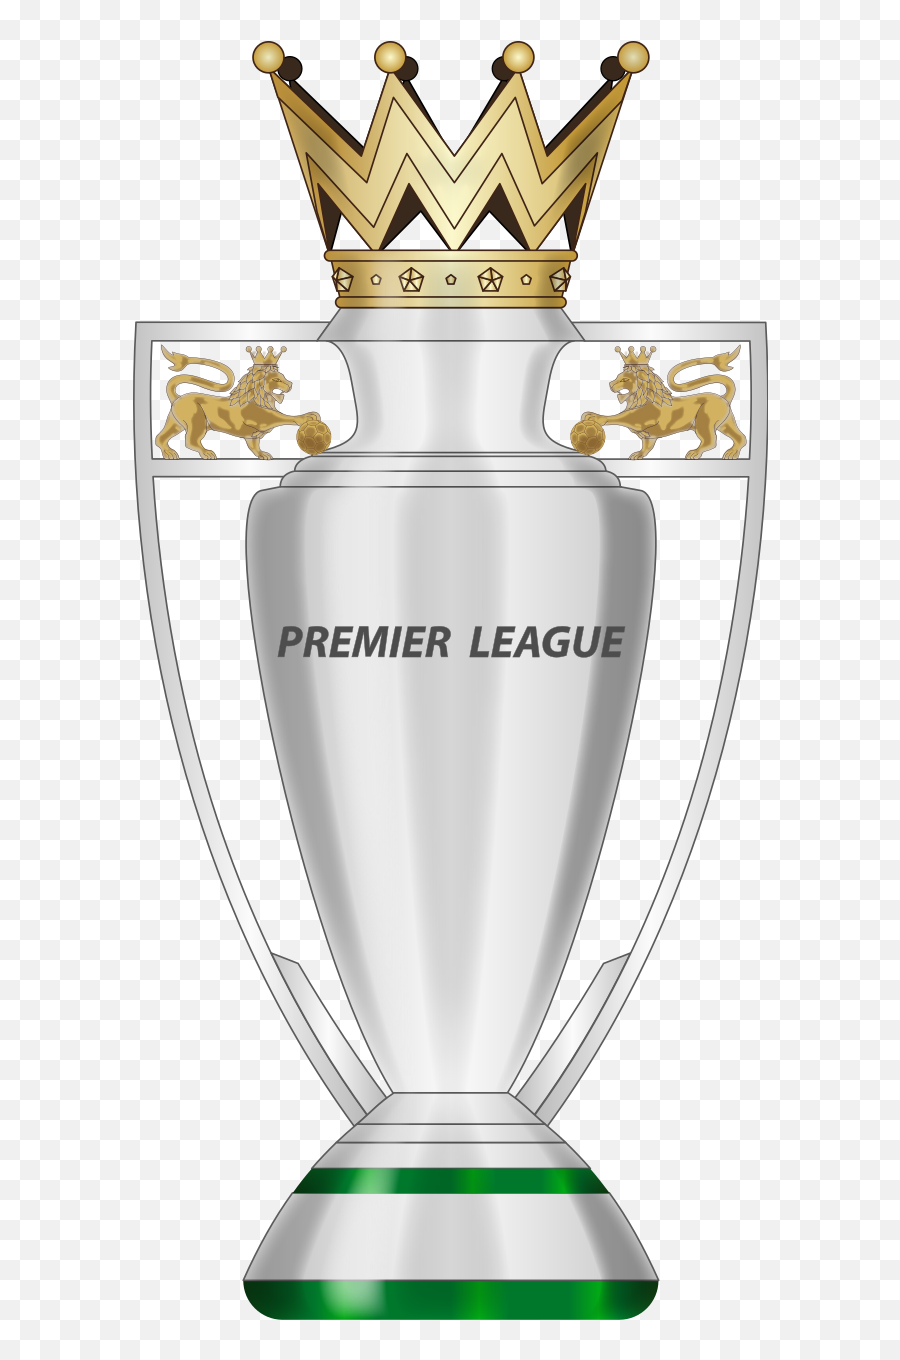 Premier League Trophy Teams - Premier League Trophy Silhouette Png,Nba Finals Trophy Png